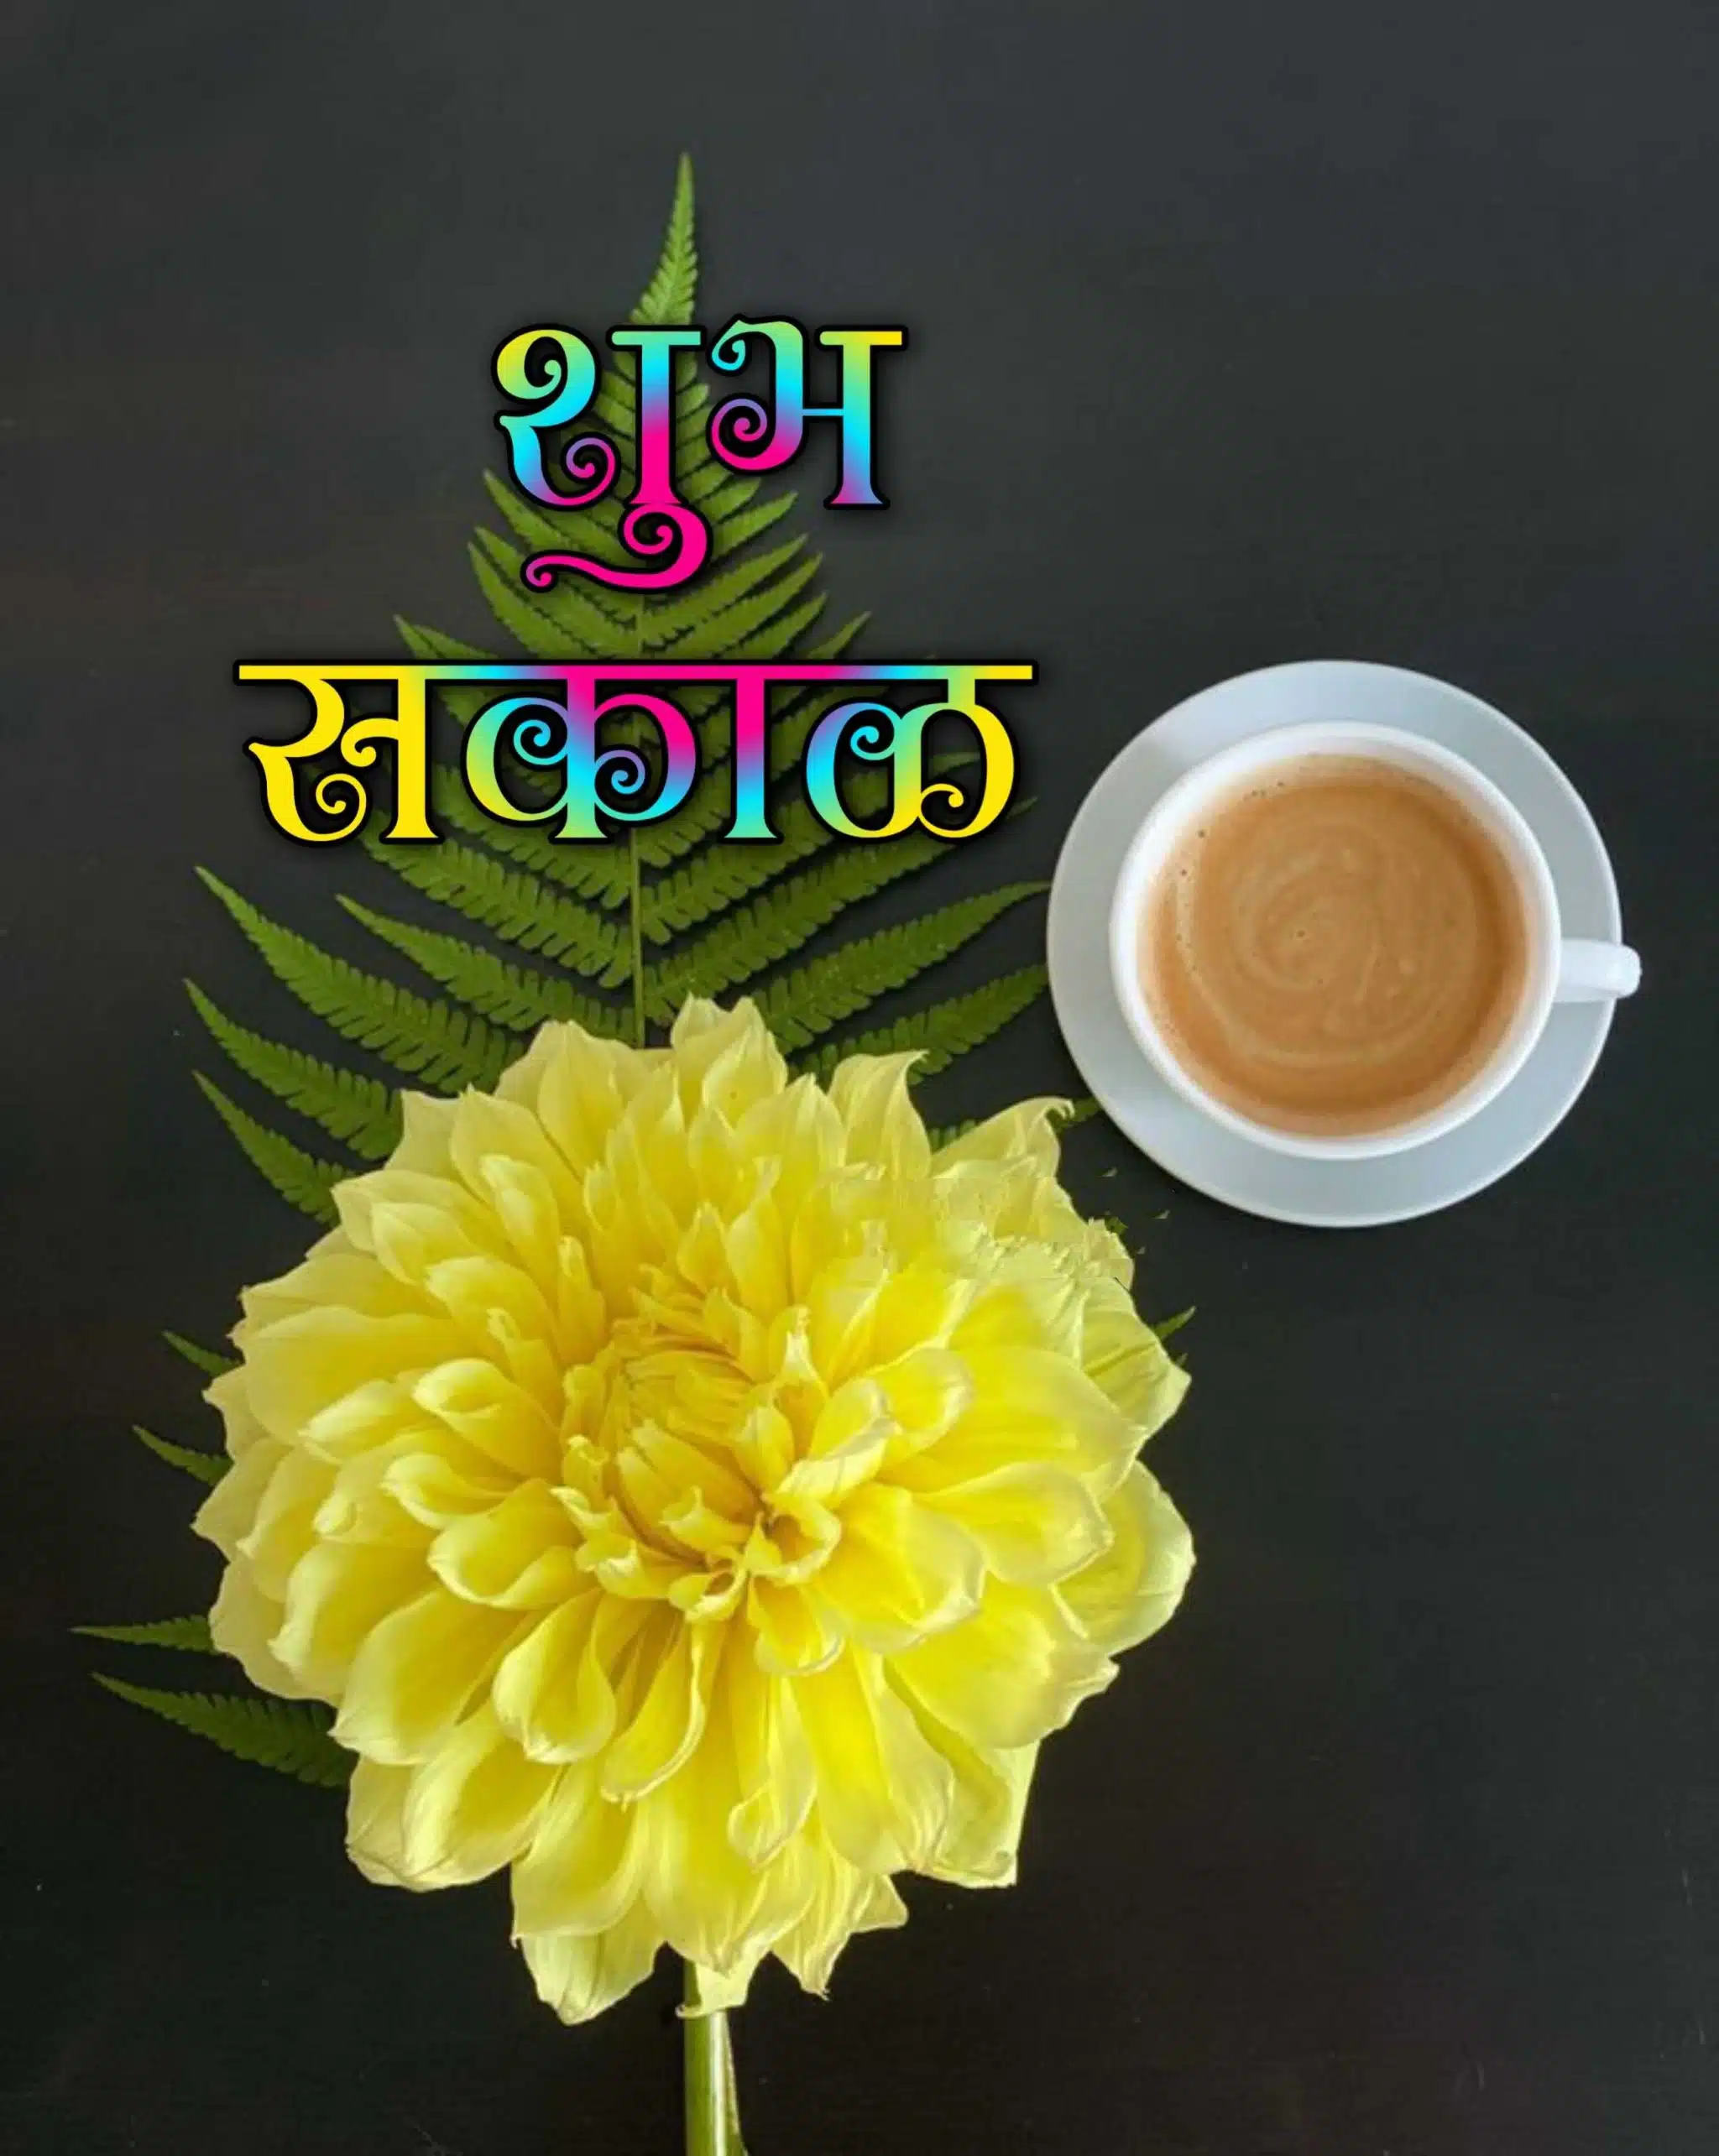 shubh sakal tea images